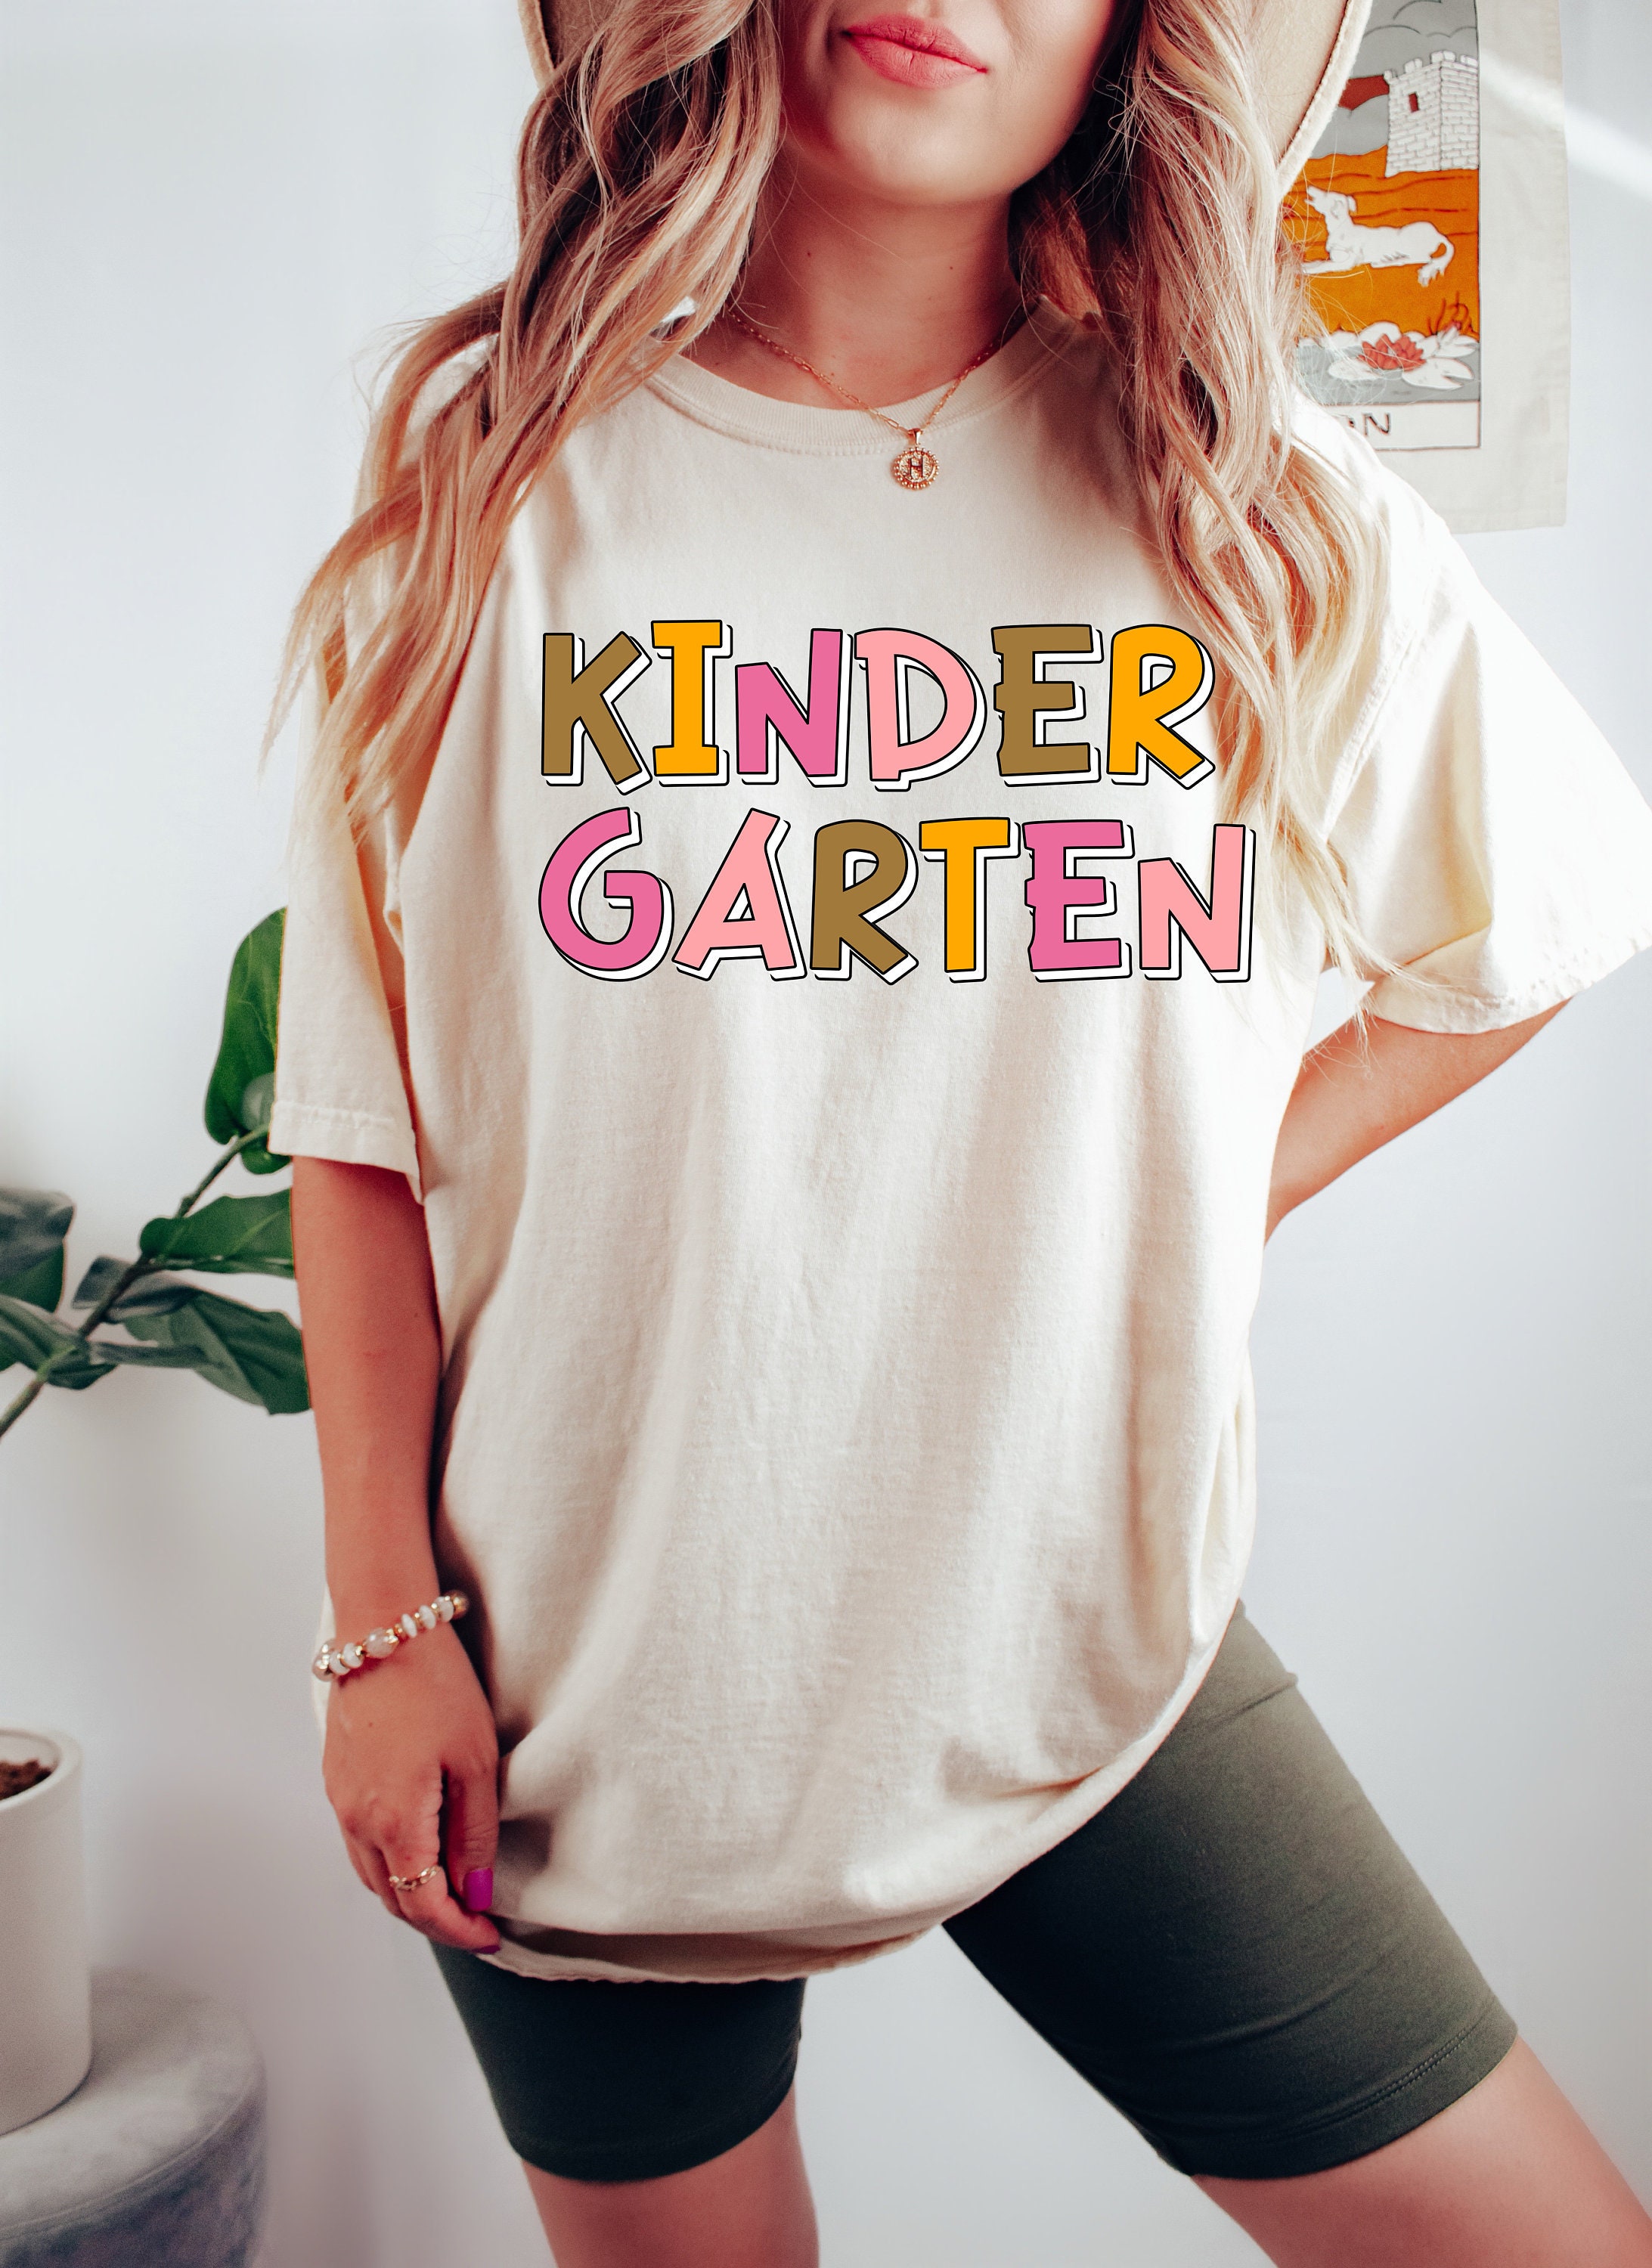 Kindergarten Shirt, Kindergarten Teacher Shirt, Kindergarten Graduation Gift, Kinder Crew T-Shirt, Kinder Squad, Kindergarten Team Tshirt